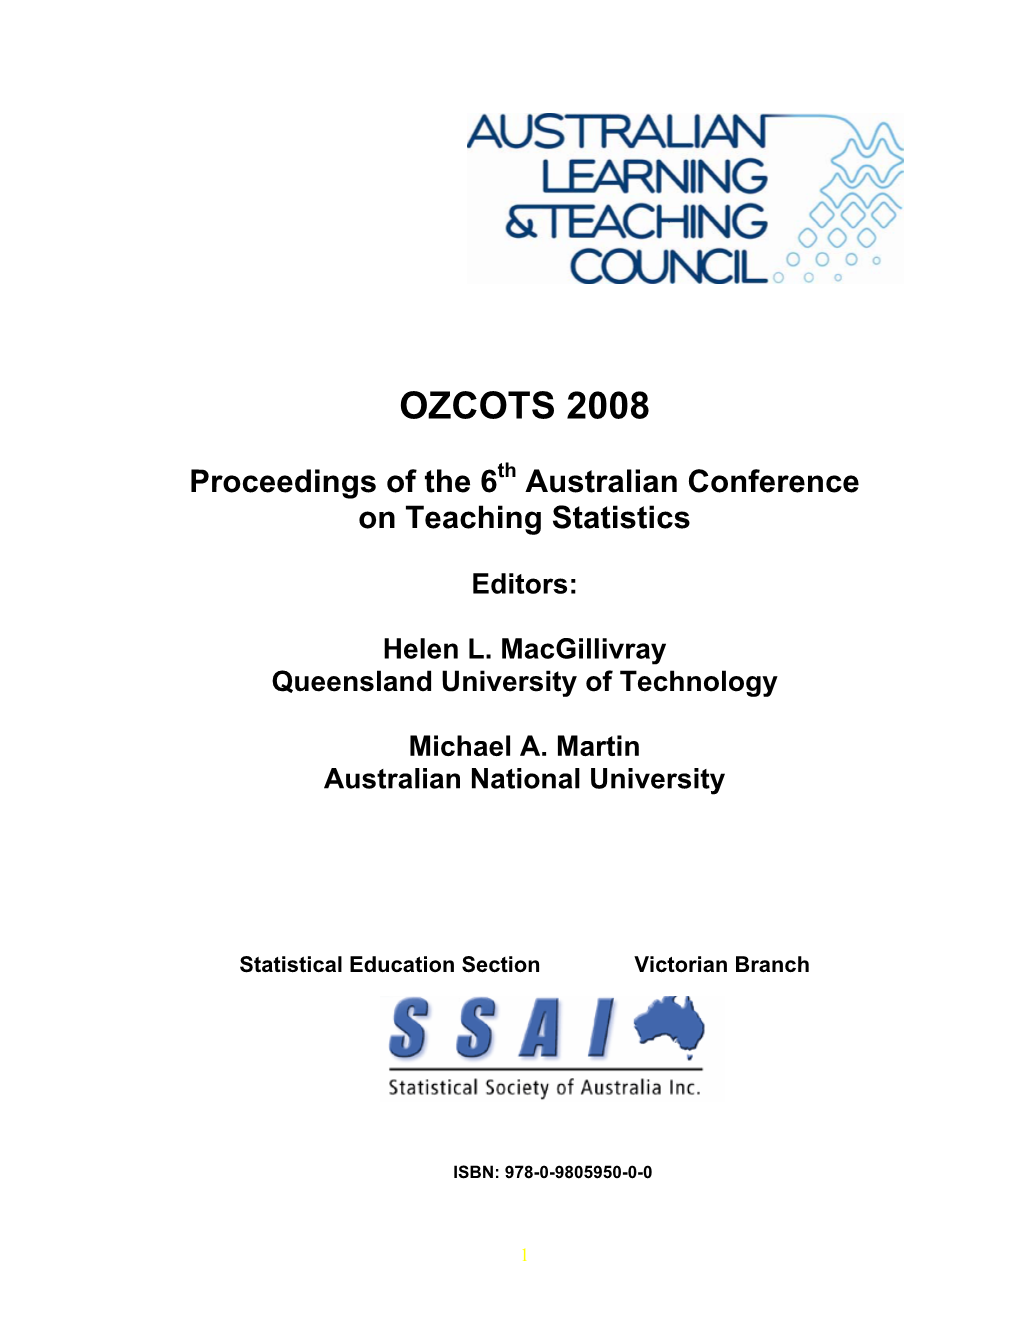 OZCOTS 2008 Proceedings